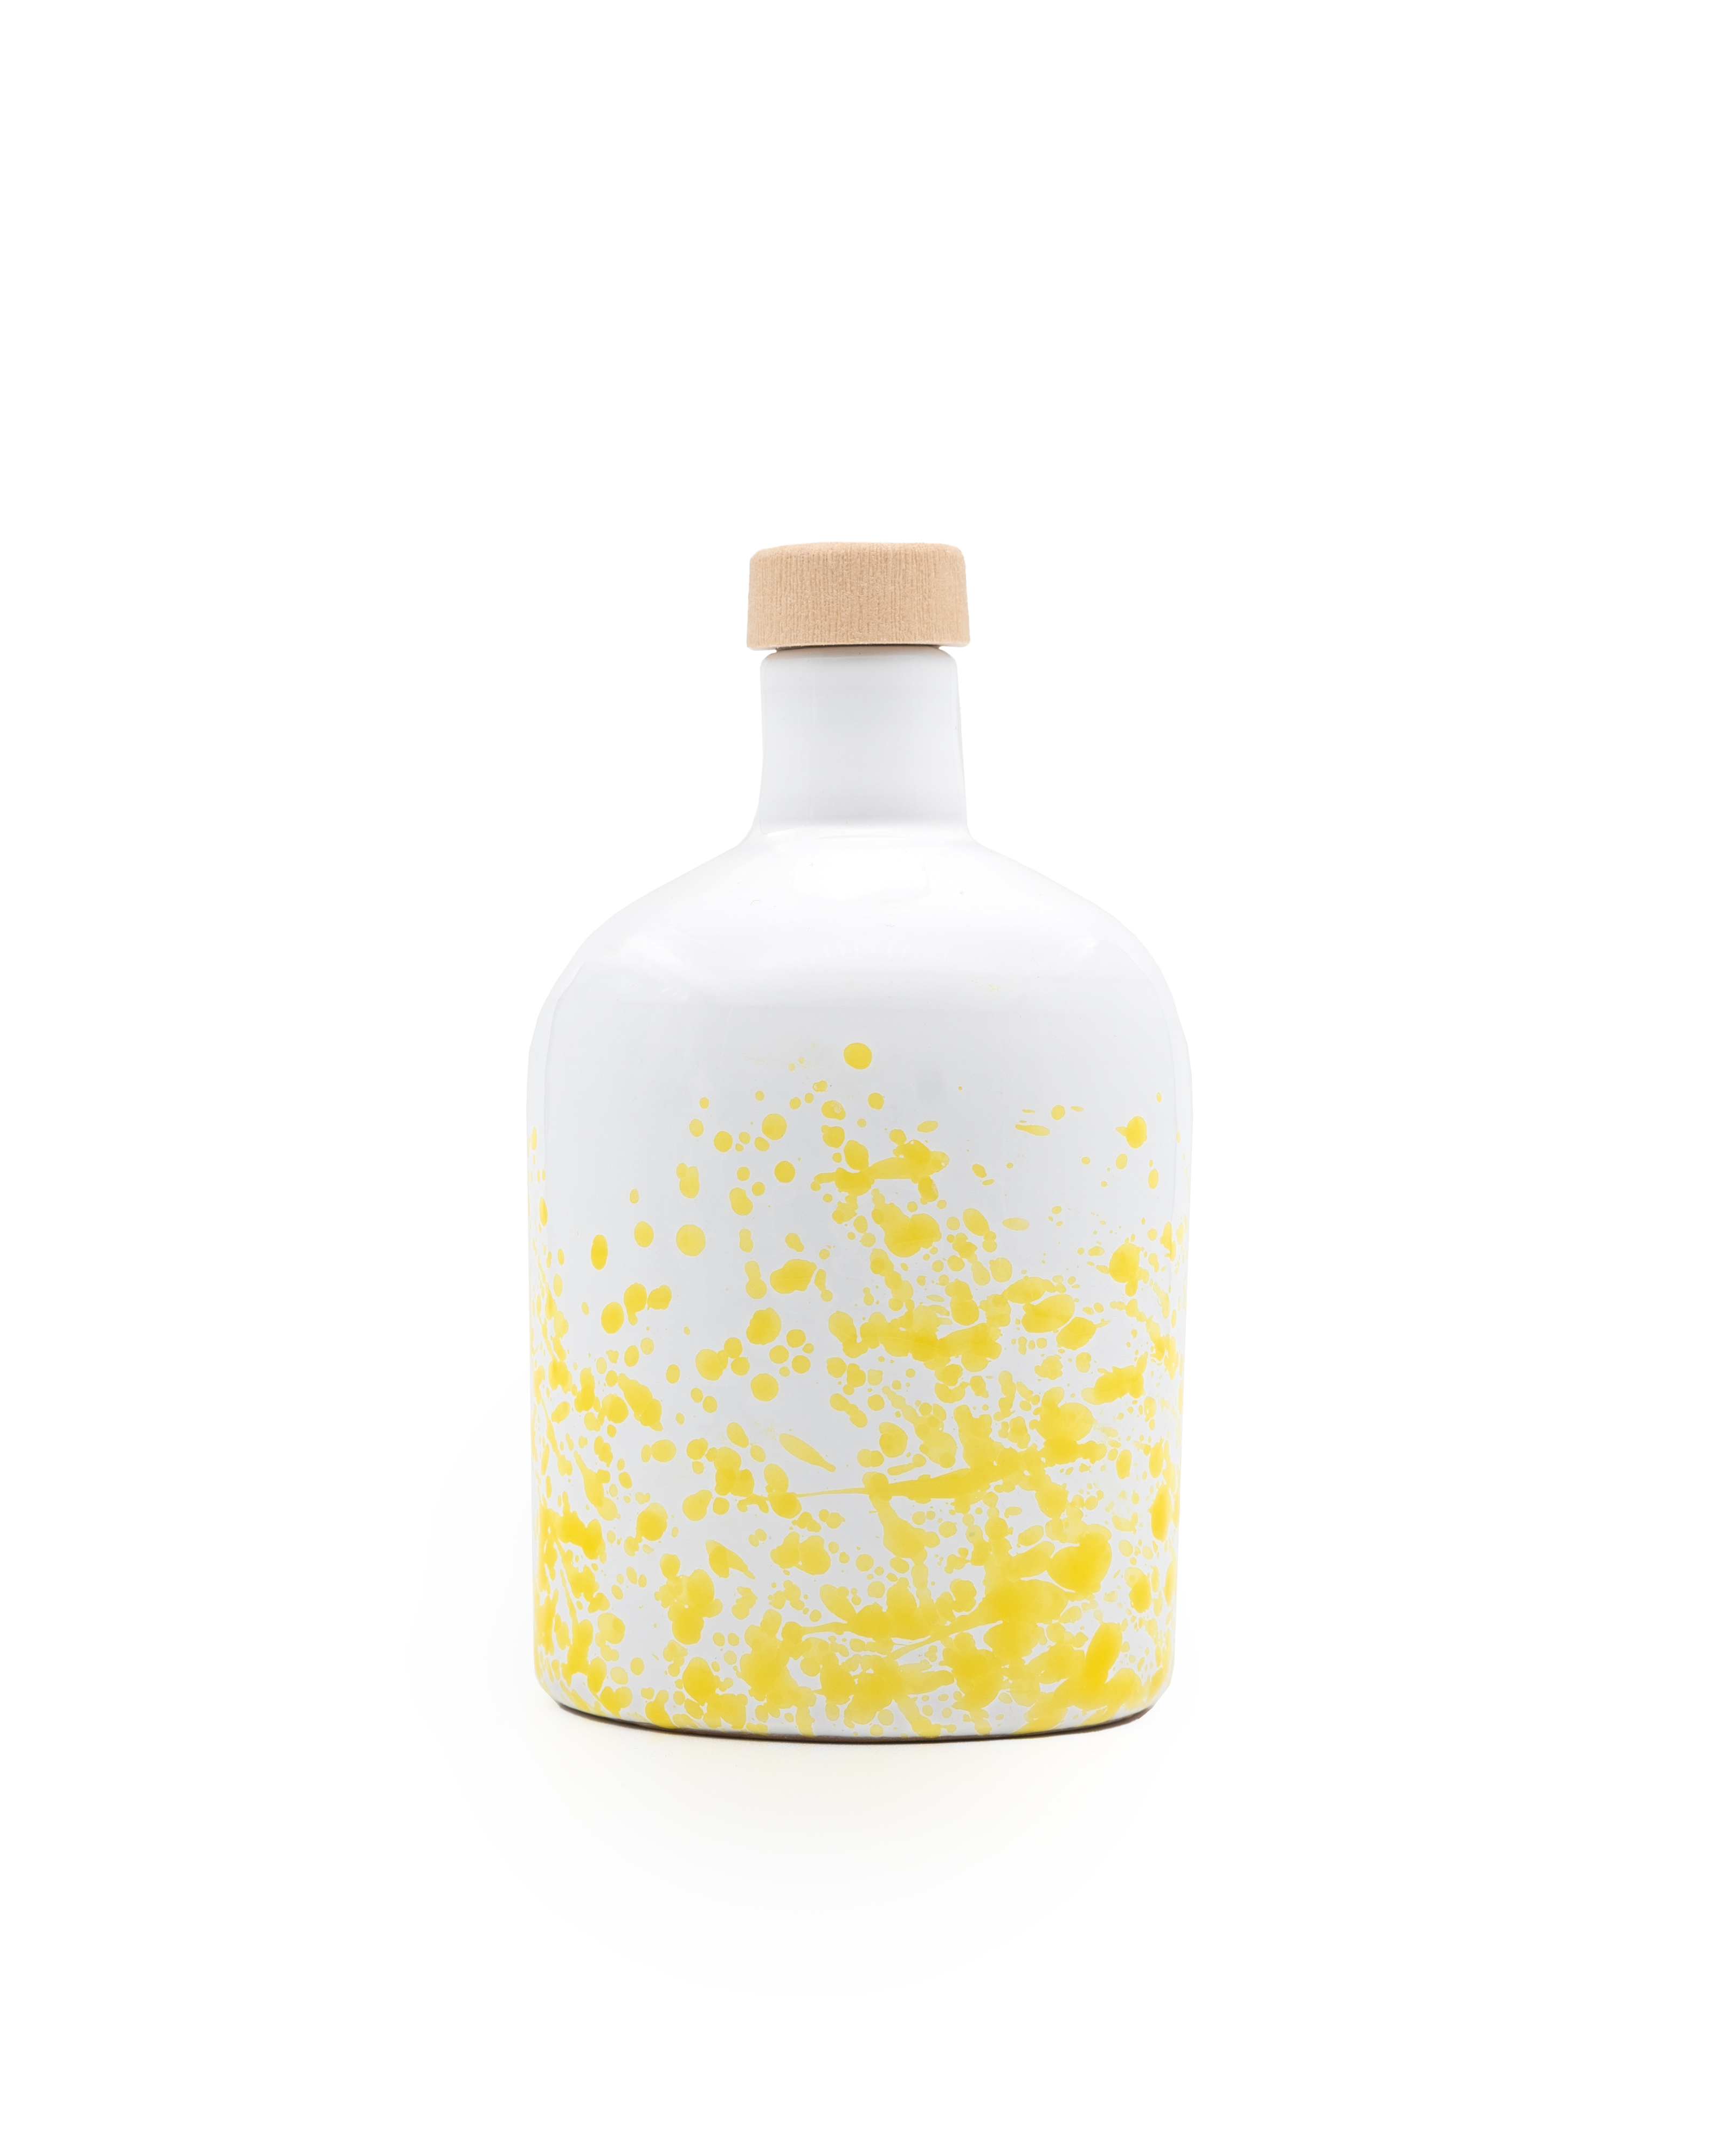 ANDANTE huile d'olive extra vierge bio, filtrée, bouteille en céramique jaune de 500ml.